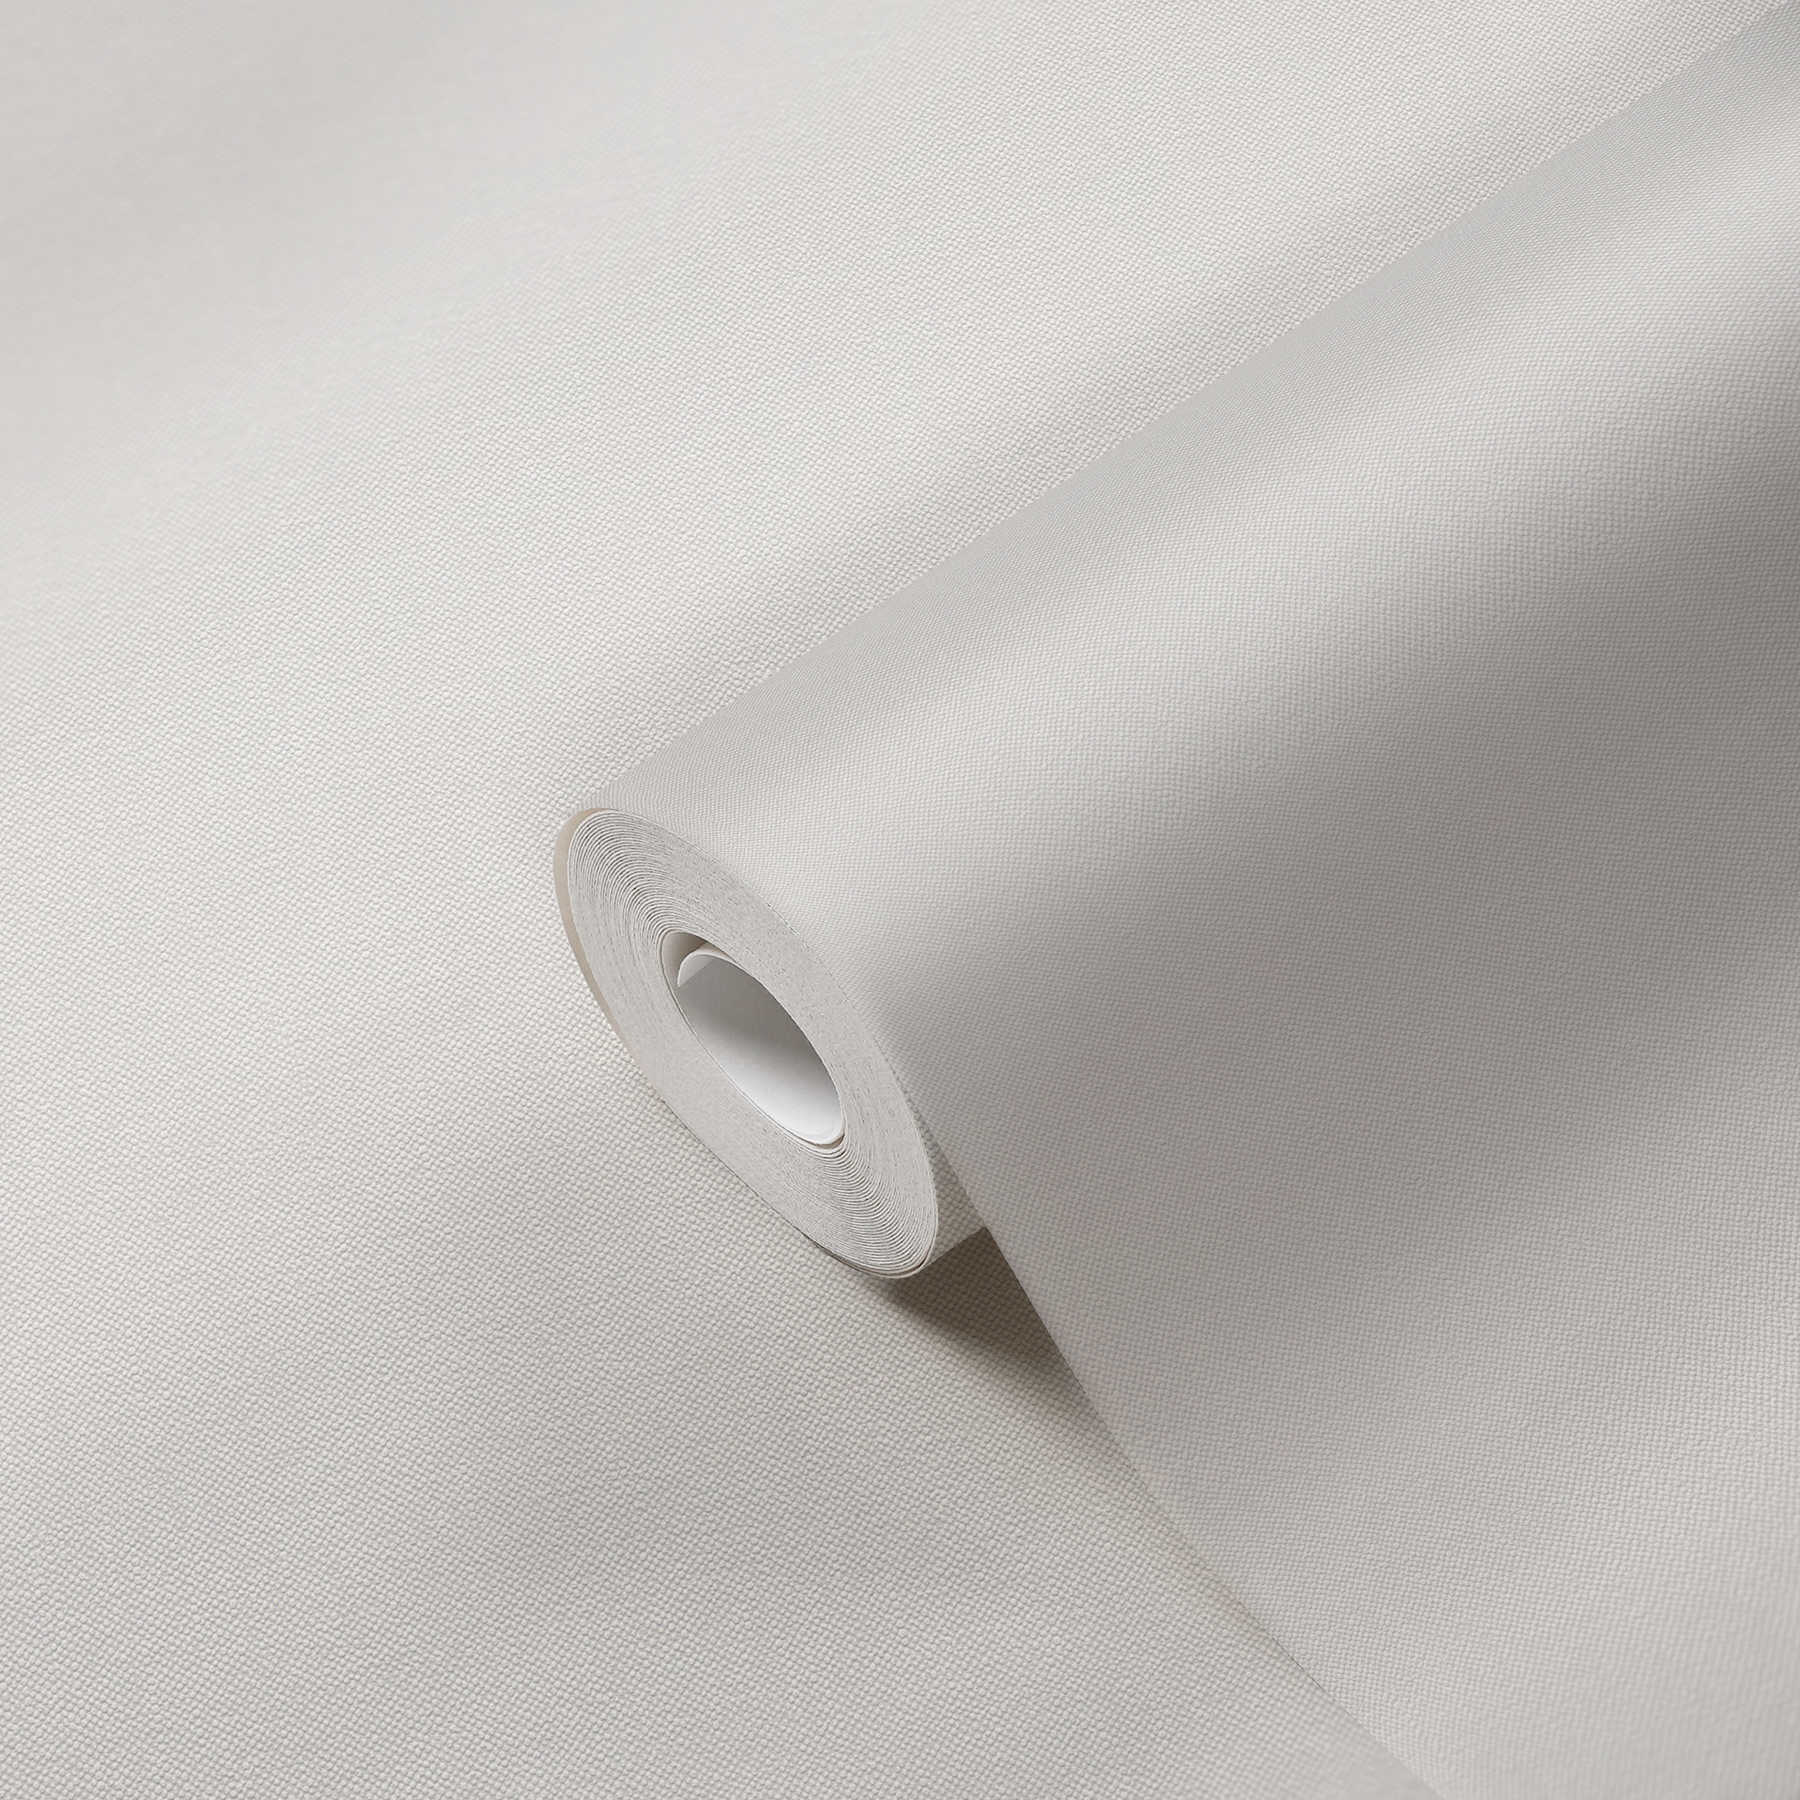             Papel pintado de aspecto de lino crema con estructura textil
        